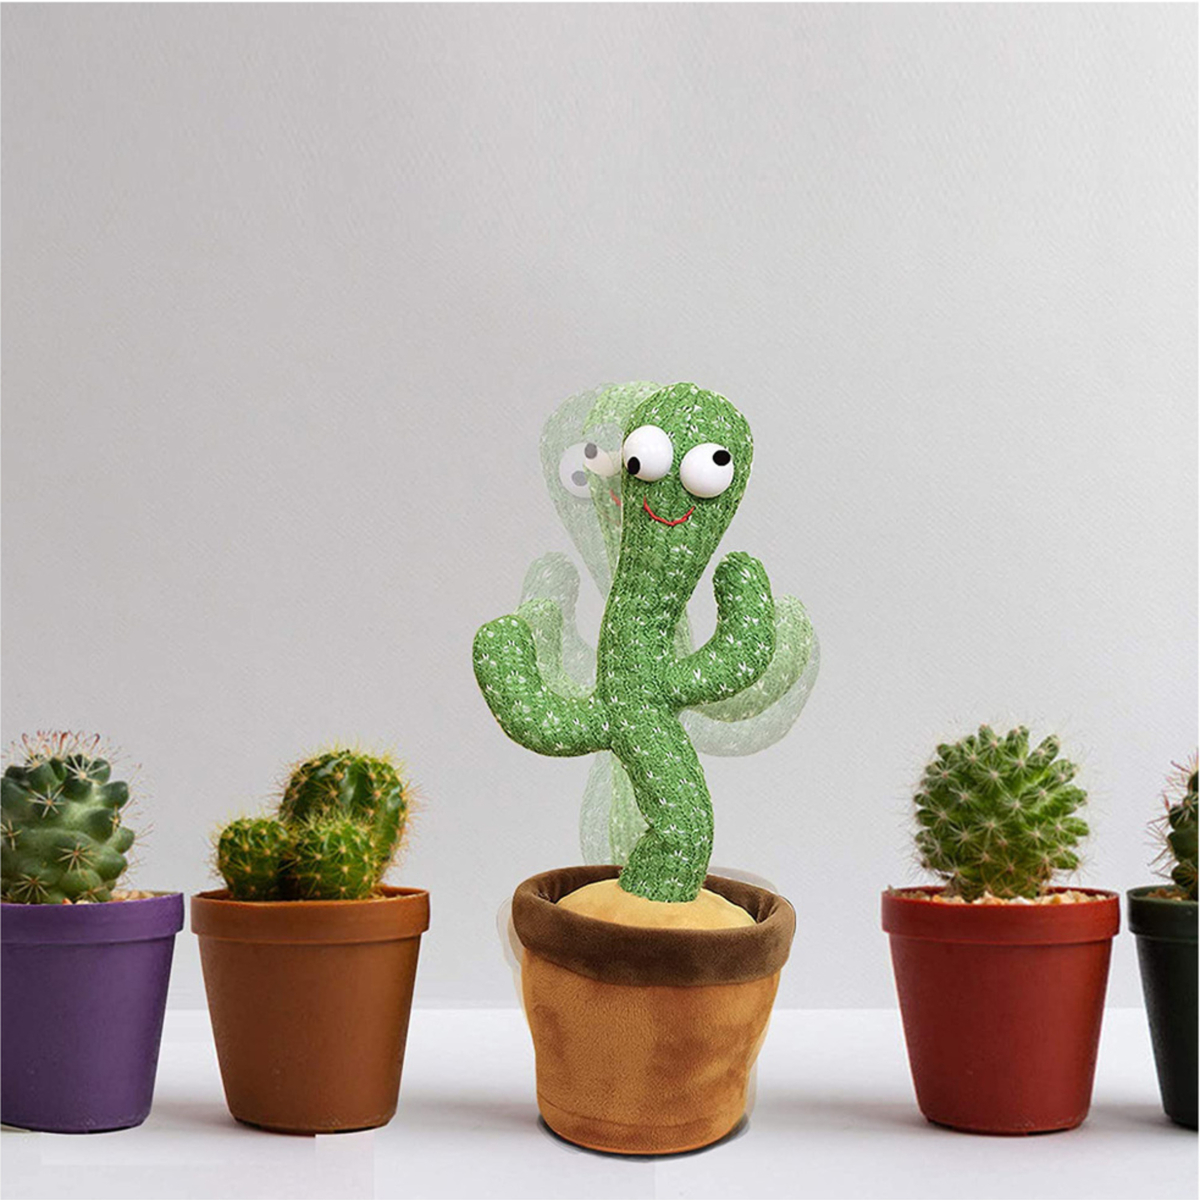 Dancing &Talking Cactus Electronic Plush Toy NHEC01